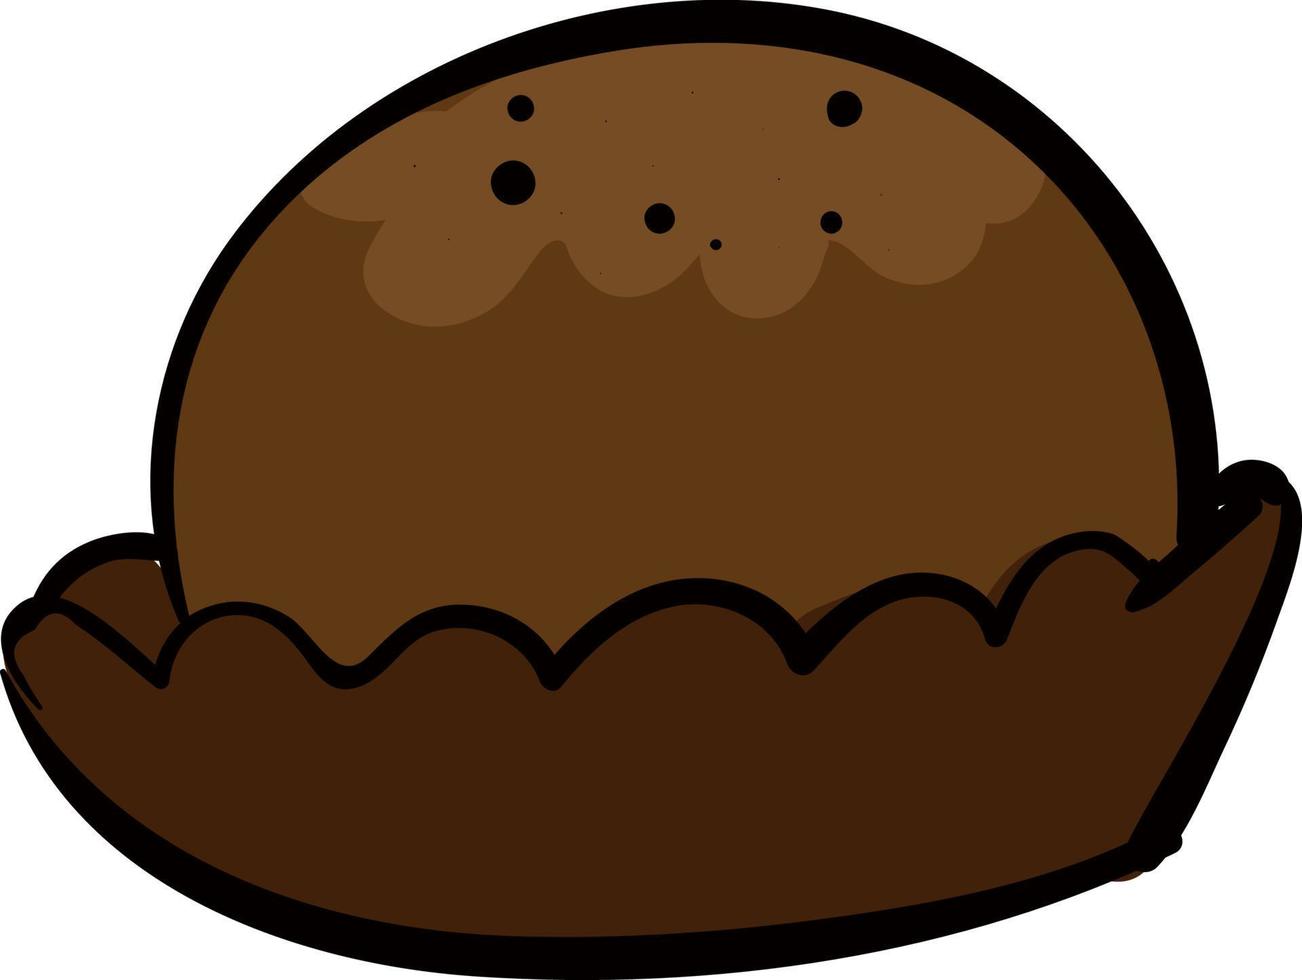 Cookie rond au chocolat, illustration, vecteur sur fond blanc.